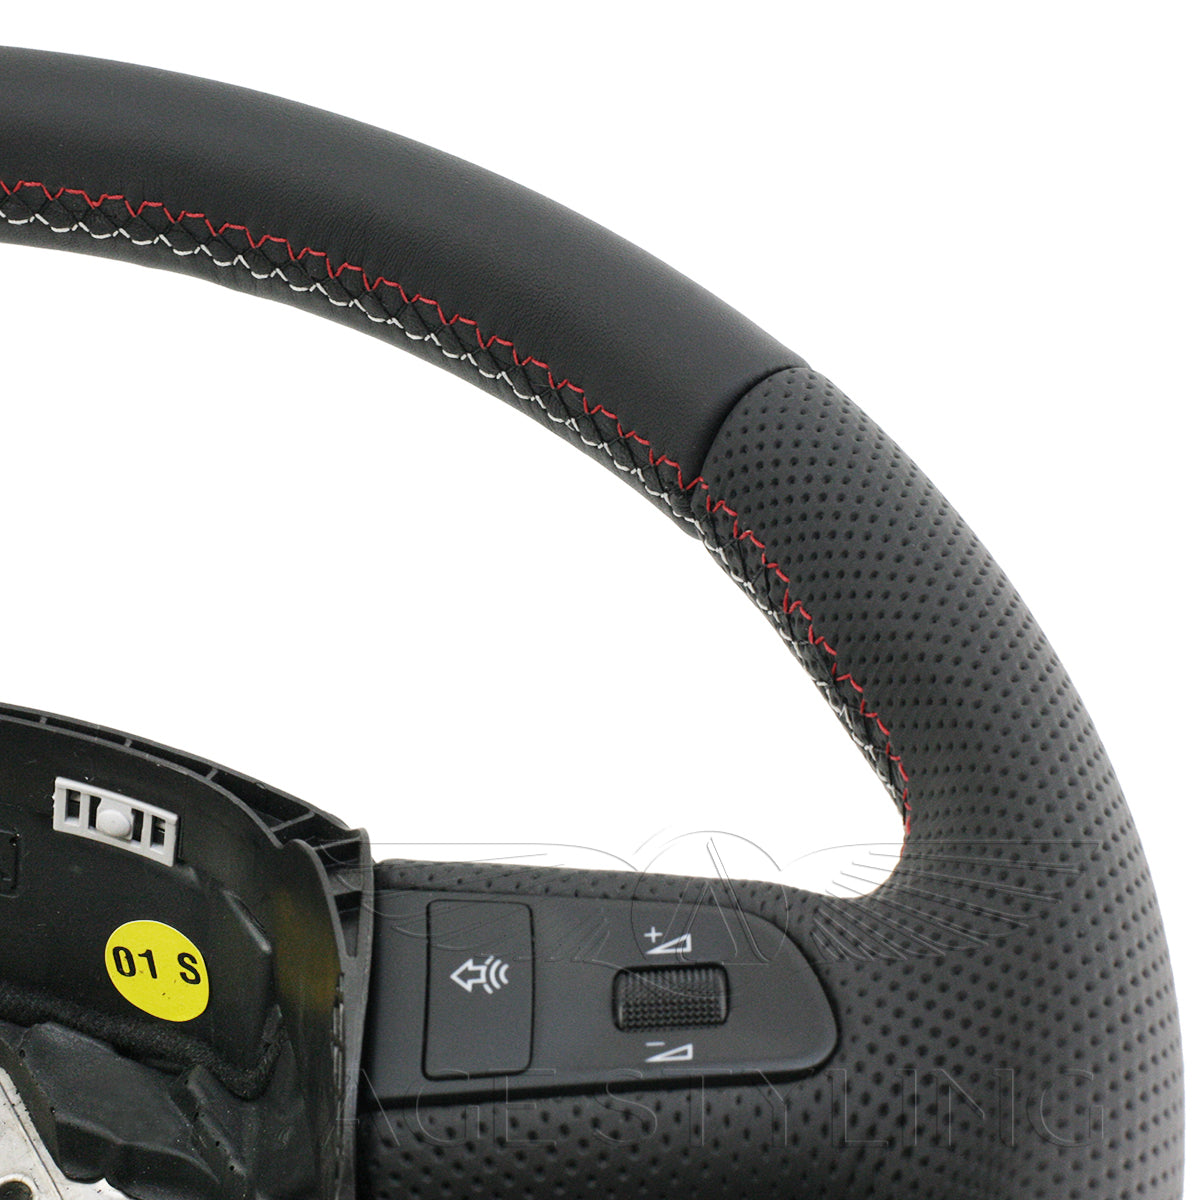 07-08 Audi A4 S4 Multimedia Steering Wheel # 4F0-419-091-BT-URS – AGE  Styling